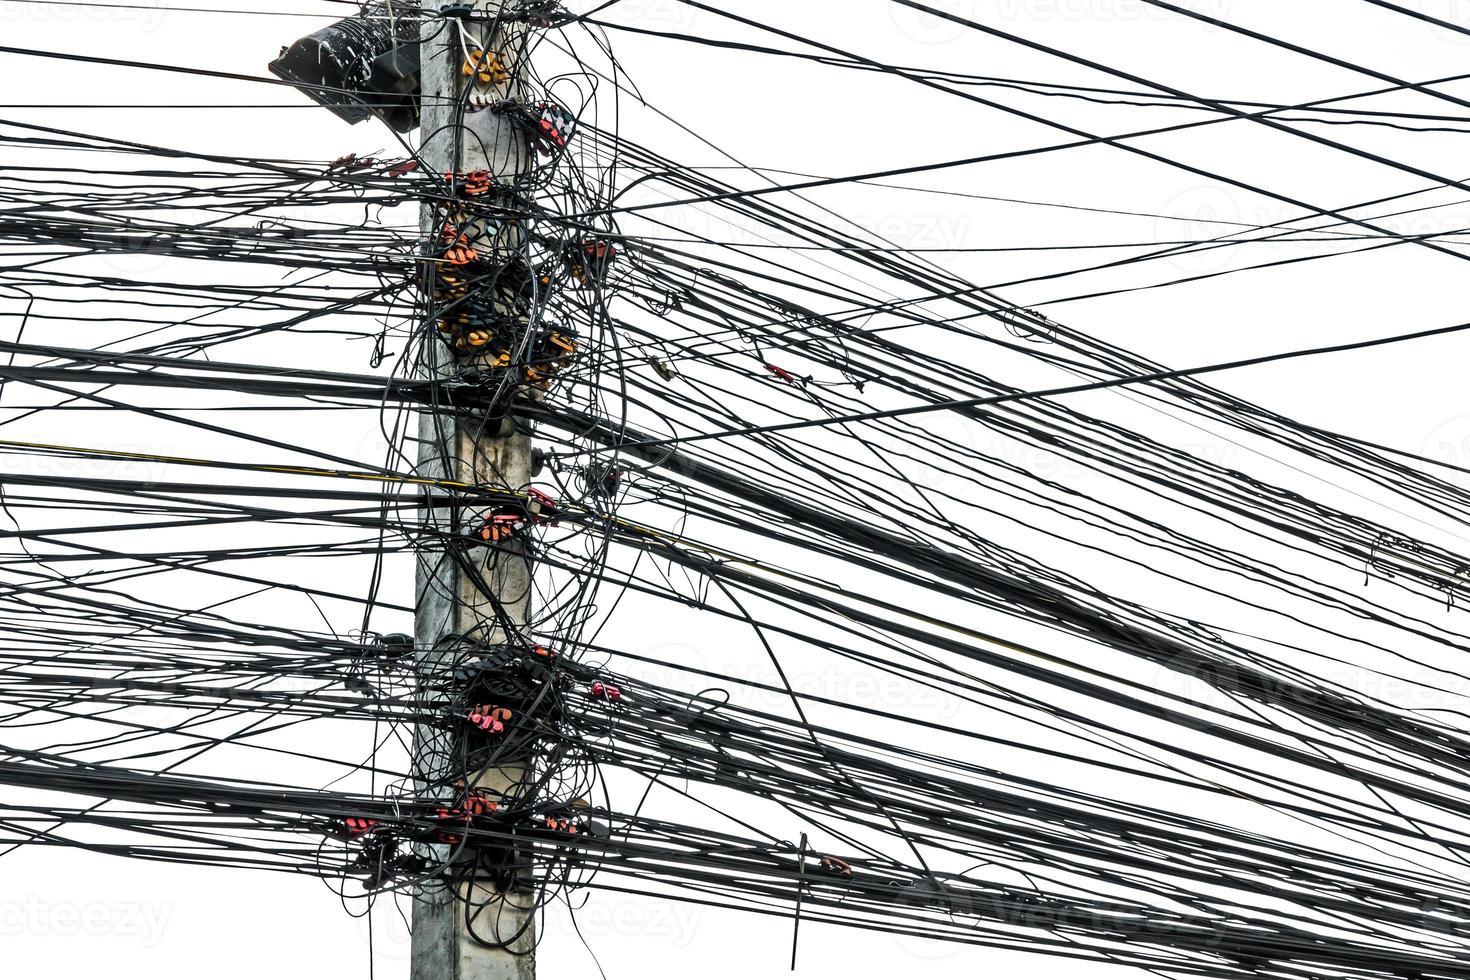 caos desordenado de cables con cables en poste eléctrico sobre fondo blanco, los muchos cables eléctricos en los postes de energía foto